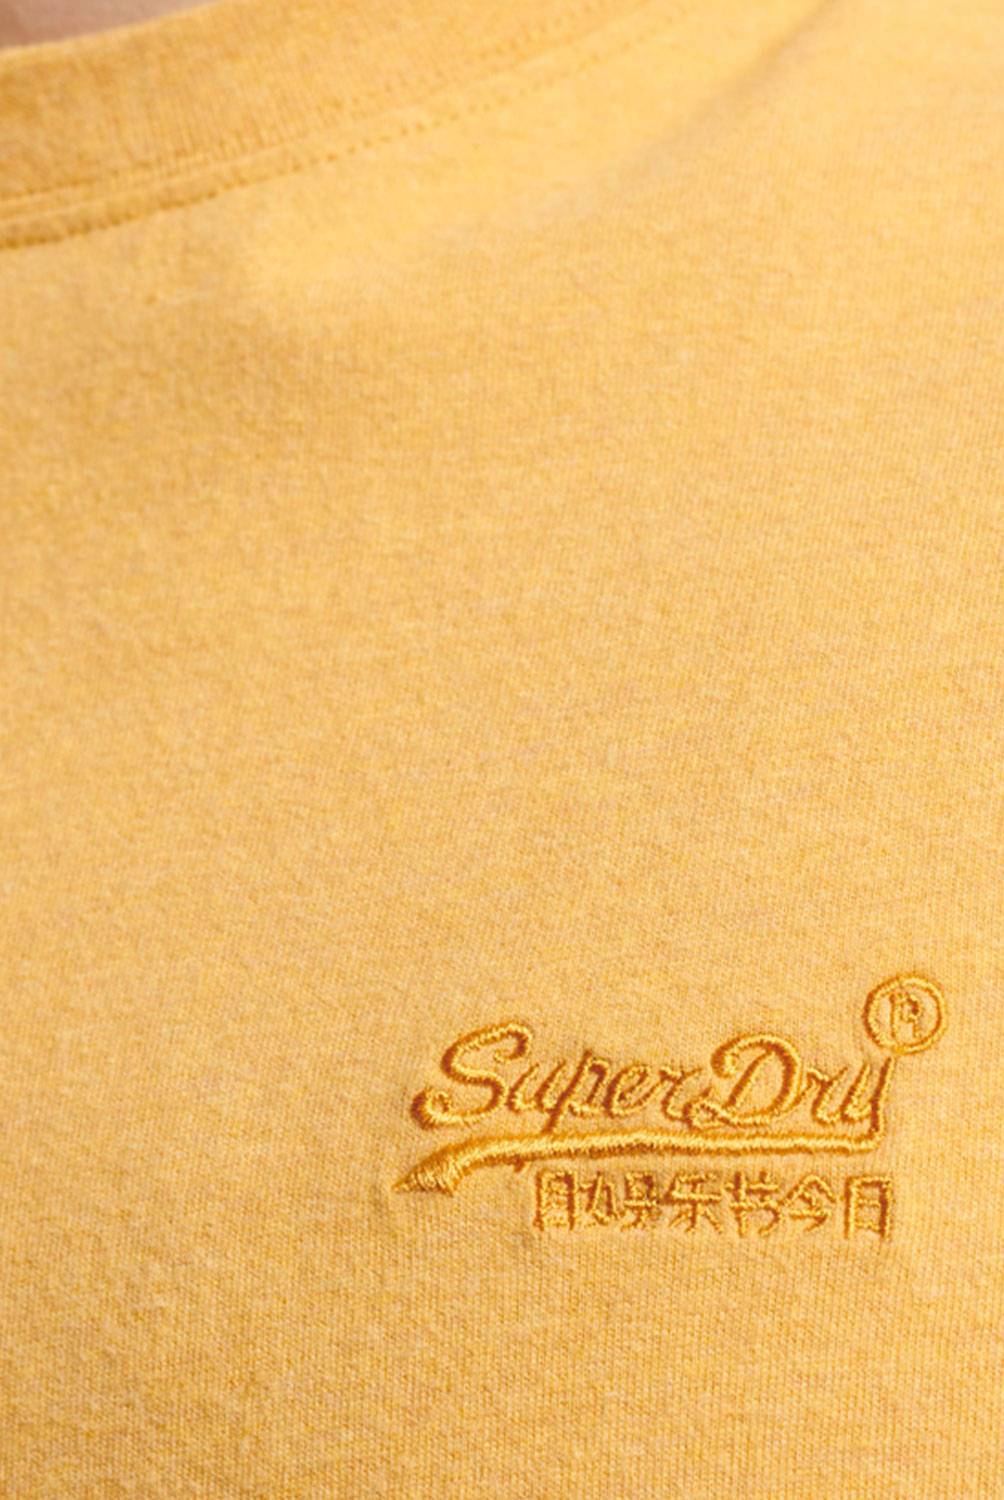 SUPERDRY - Polera De Algodón Orgánico Con Logotipo Vintage Hombre Superdry